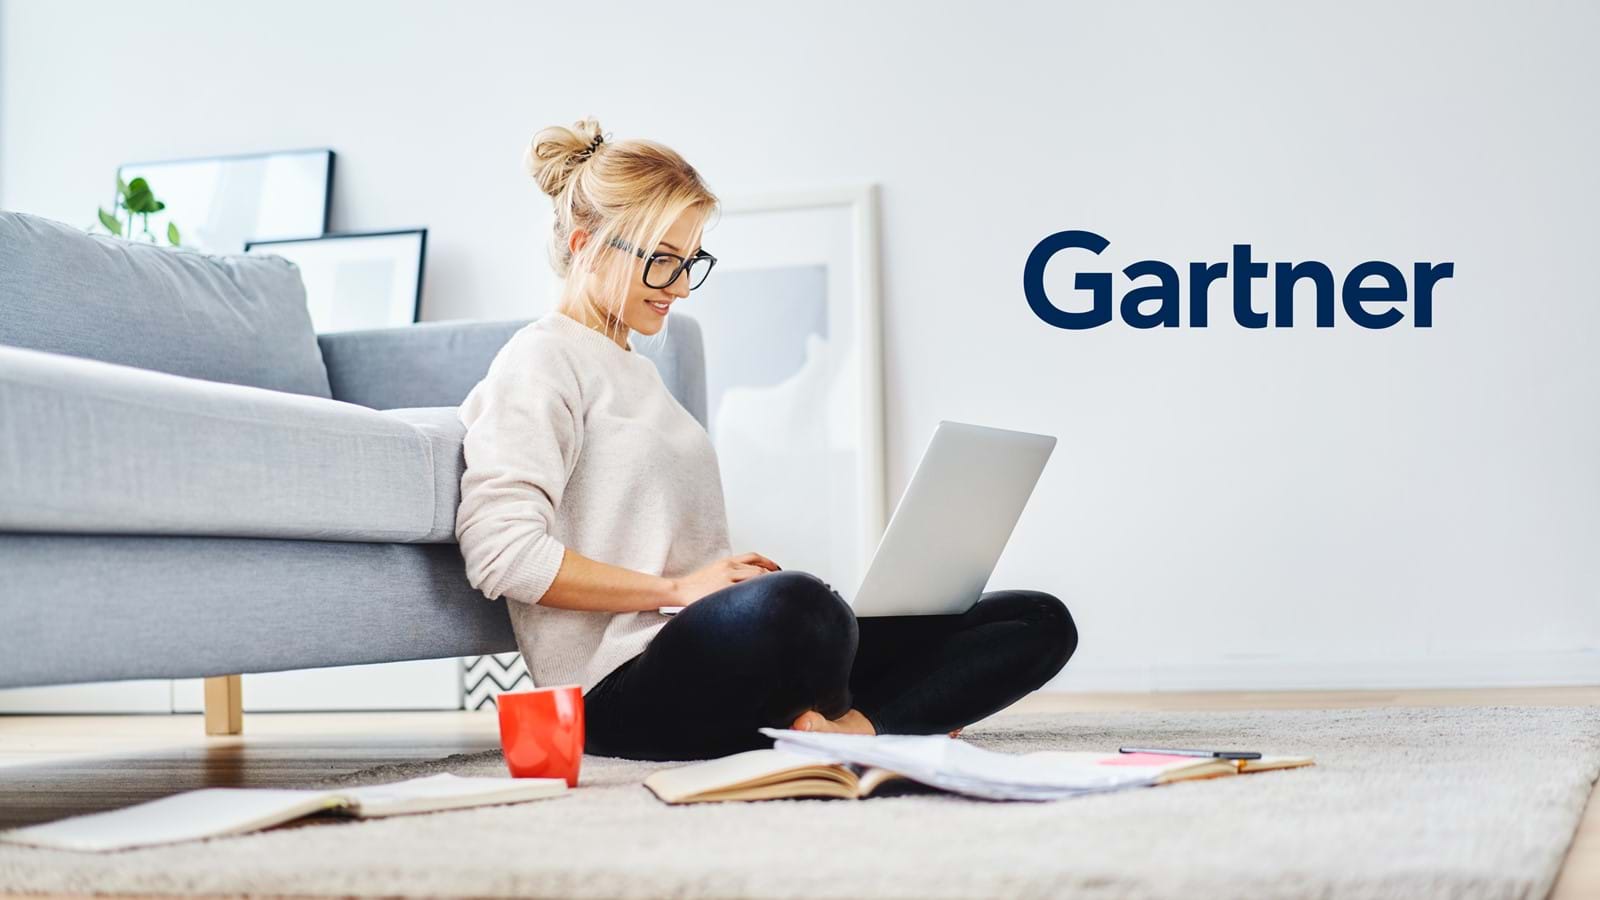 Employee reading Gartner’s Market Guide on her laptop